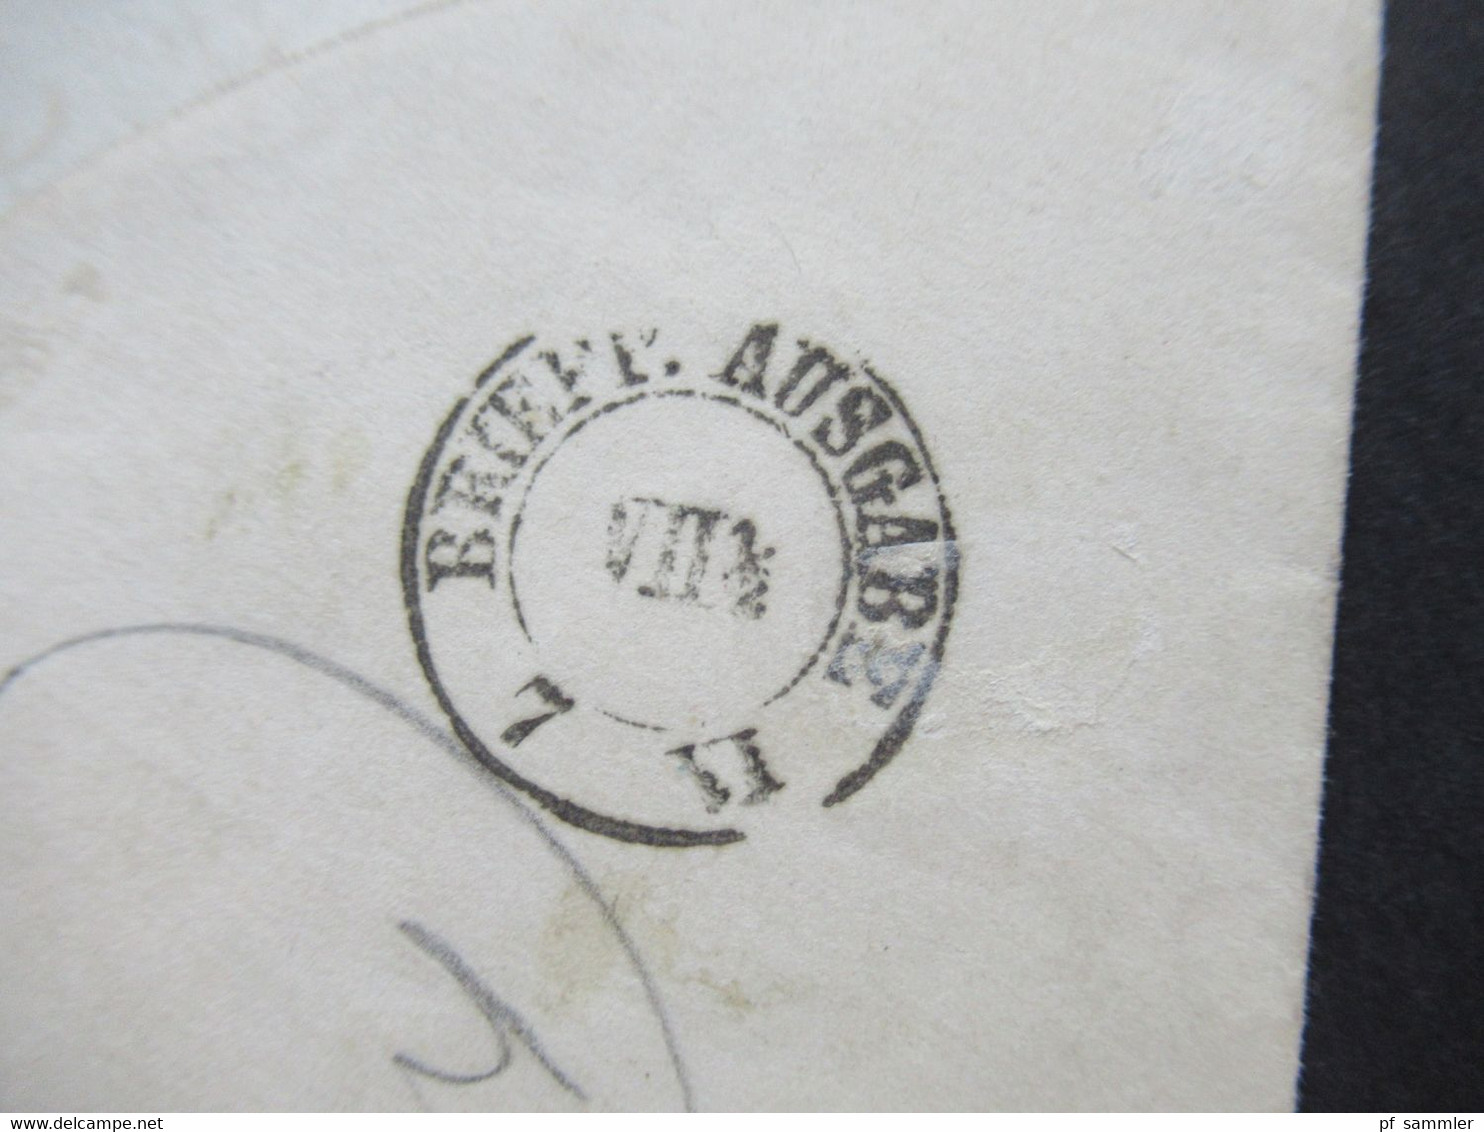 AD NDP 6.6..1870 GA Umschlag mit 2 Zusatzfrankaturen als Paketbegleitadresse Aufkleber aus Berlin Post Exped. 15